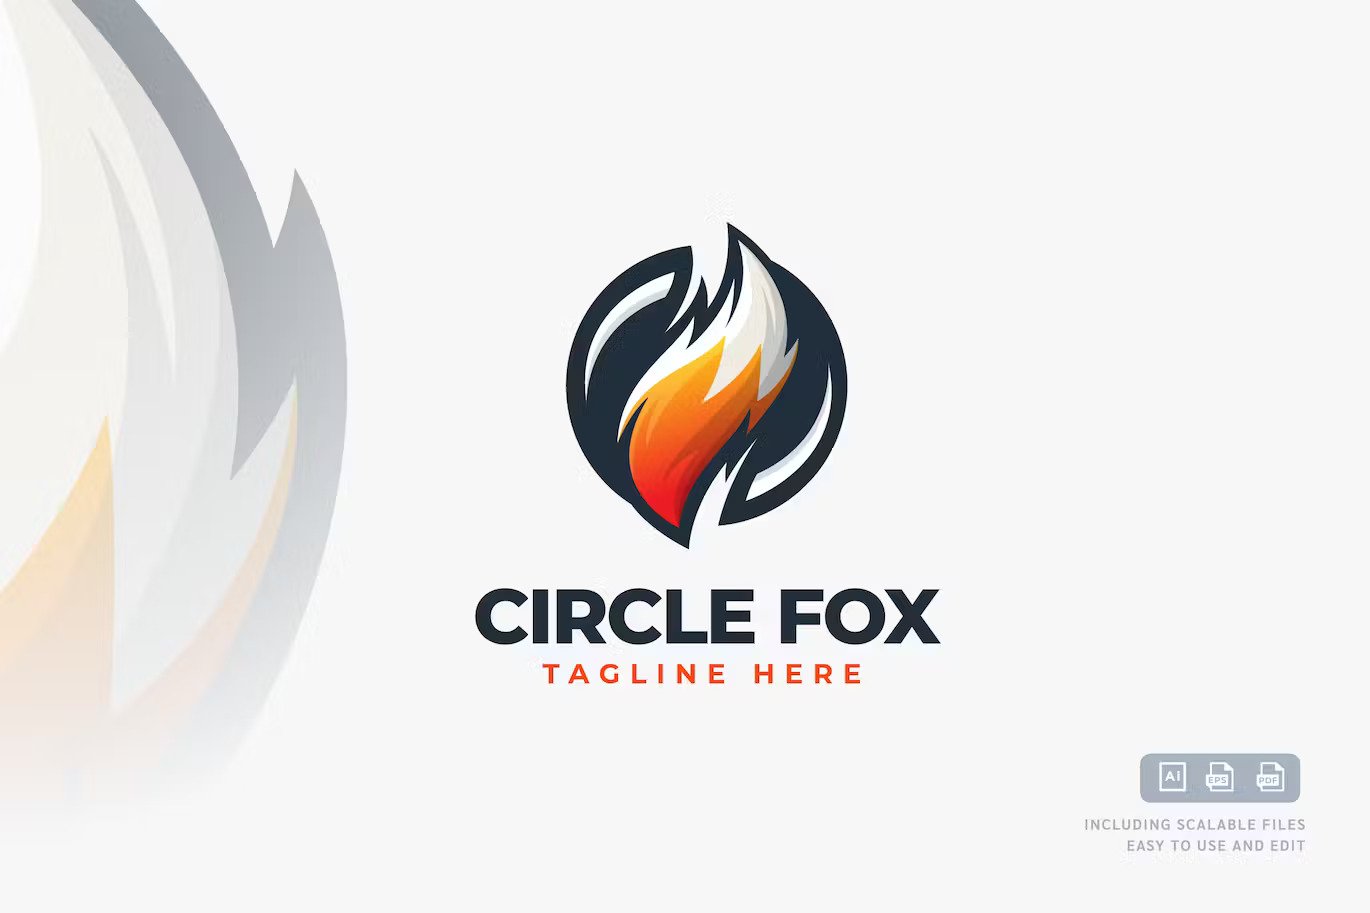 A circle fox logo design